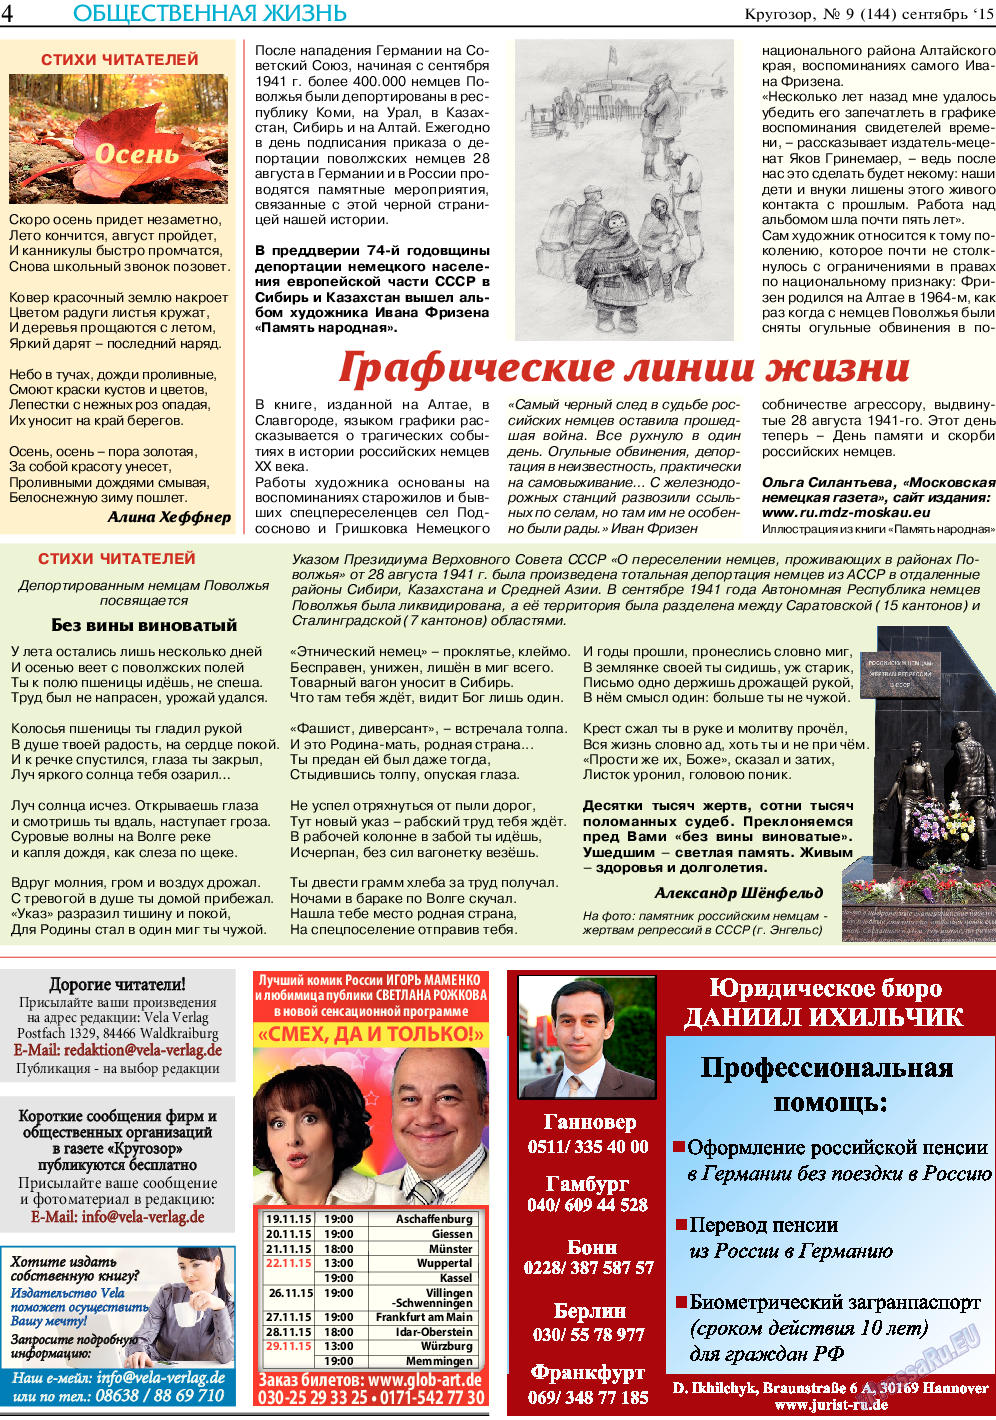 Кругозор (газета). 2015 год, номер 9, стр. 4